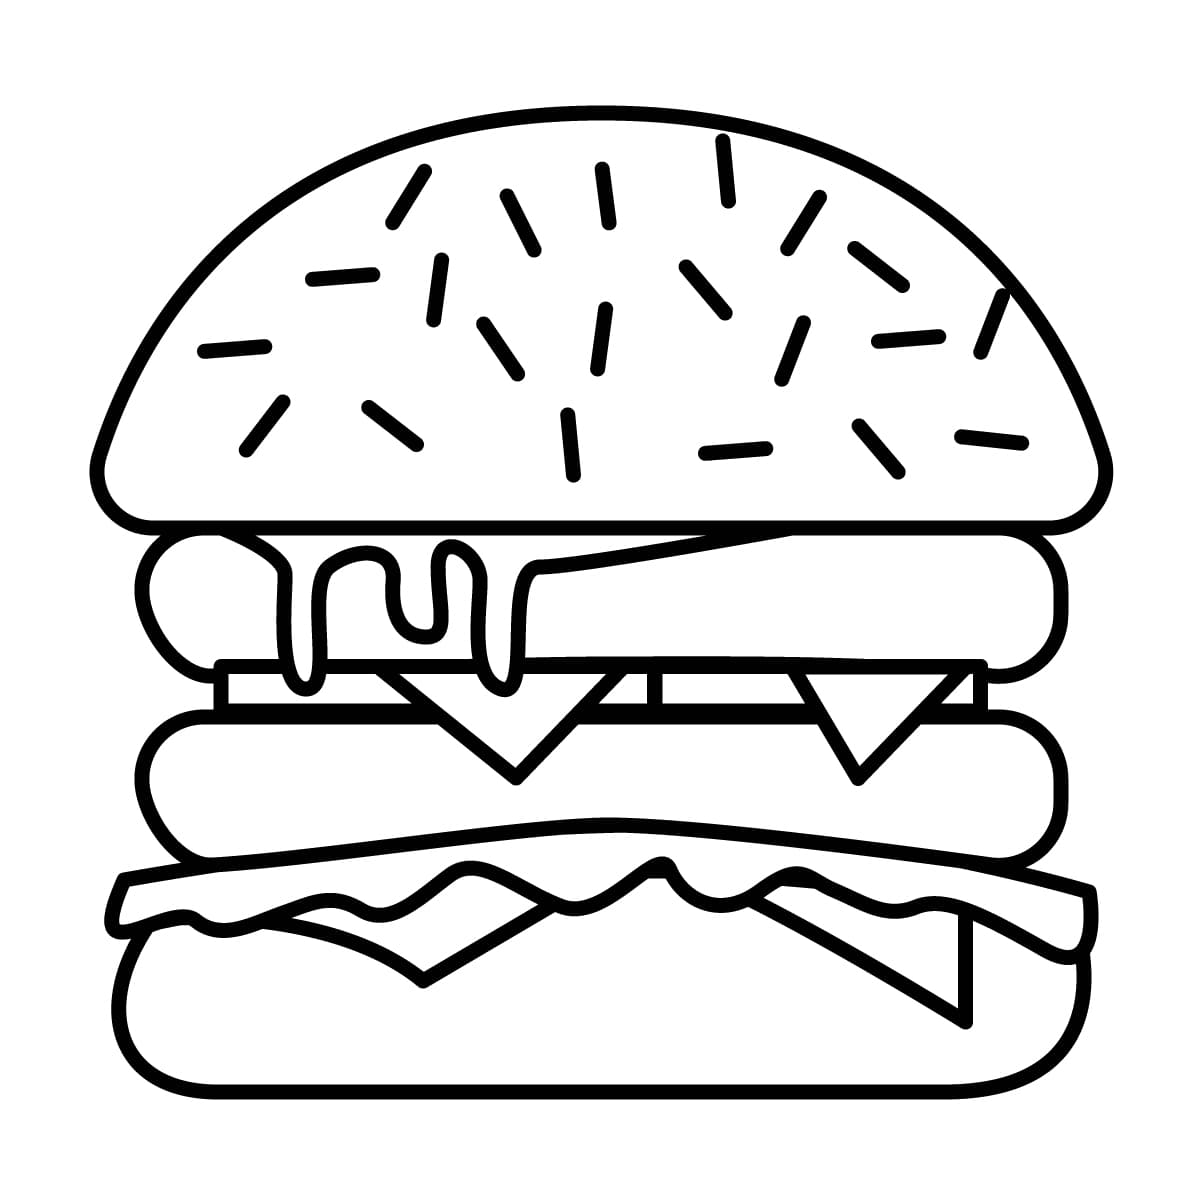 Dibujo de Emoticones de hamburguesa para colorear  Dibujos para colorear  imprimir gratis